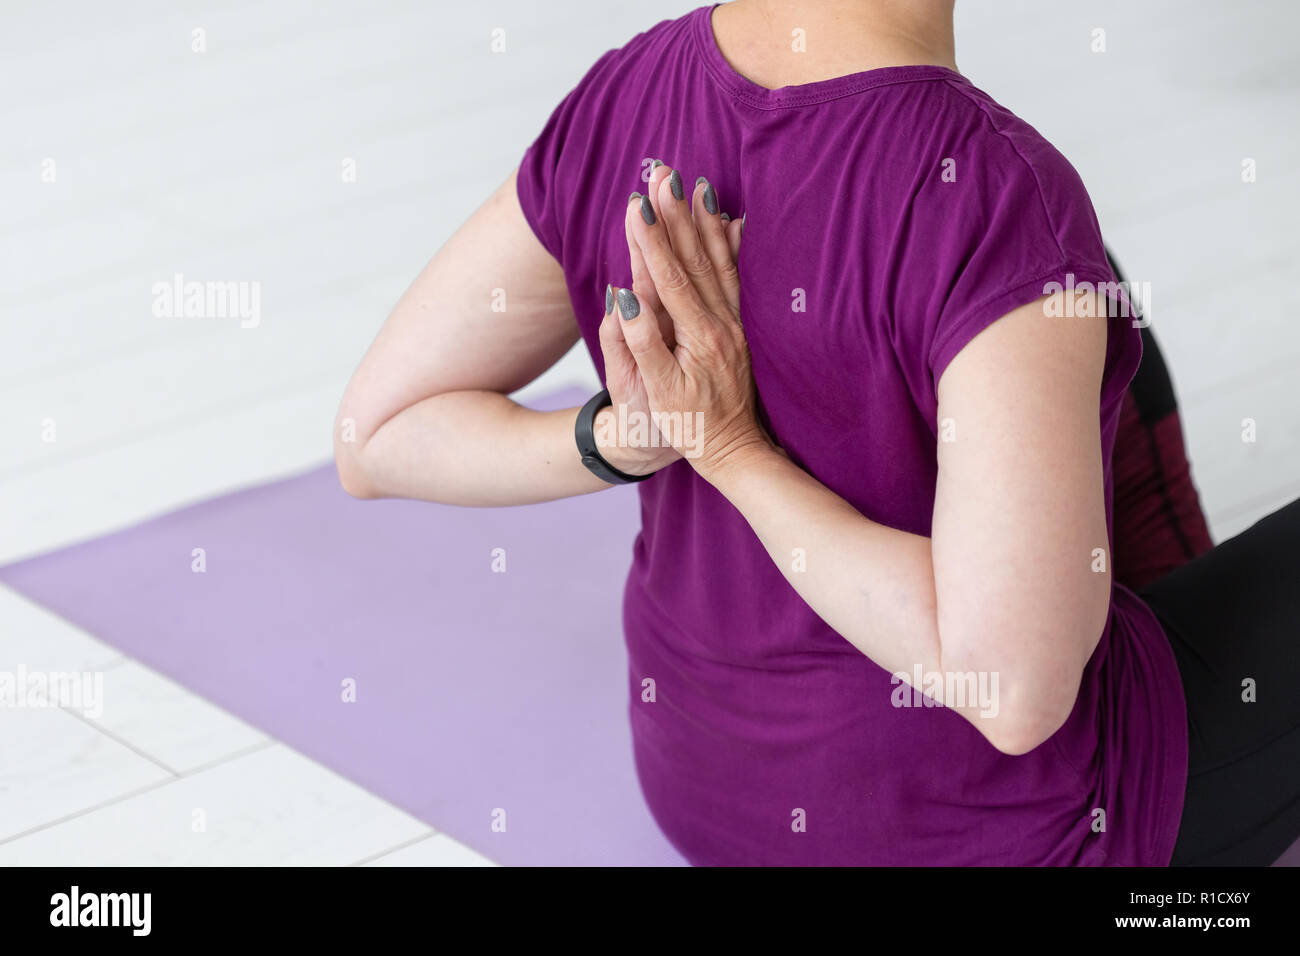 Les gens, le sport, le yoga et la santé concept - Middle-aged woman sitting on yoga mat avec les mains derrière le dos Banque D'Images